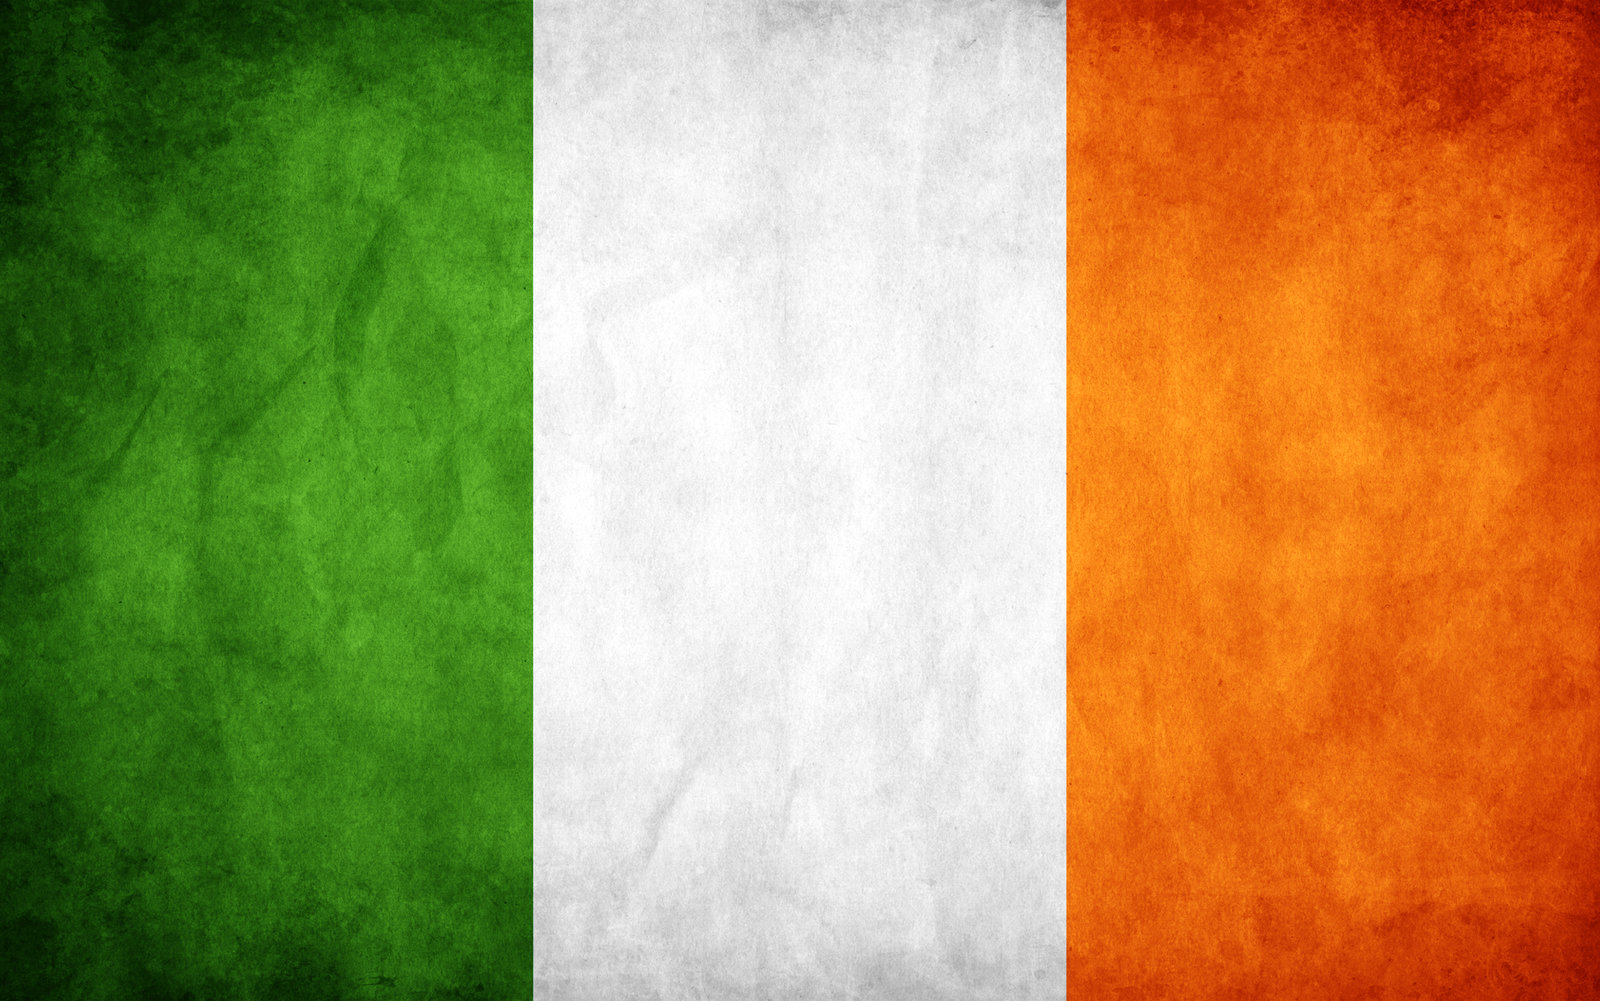 Ireland Grunge Flag by think0 on DeviantArt